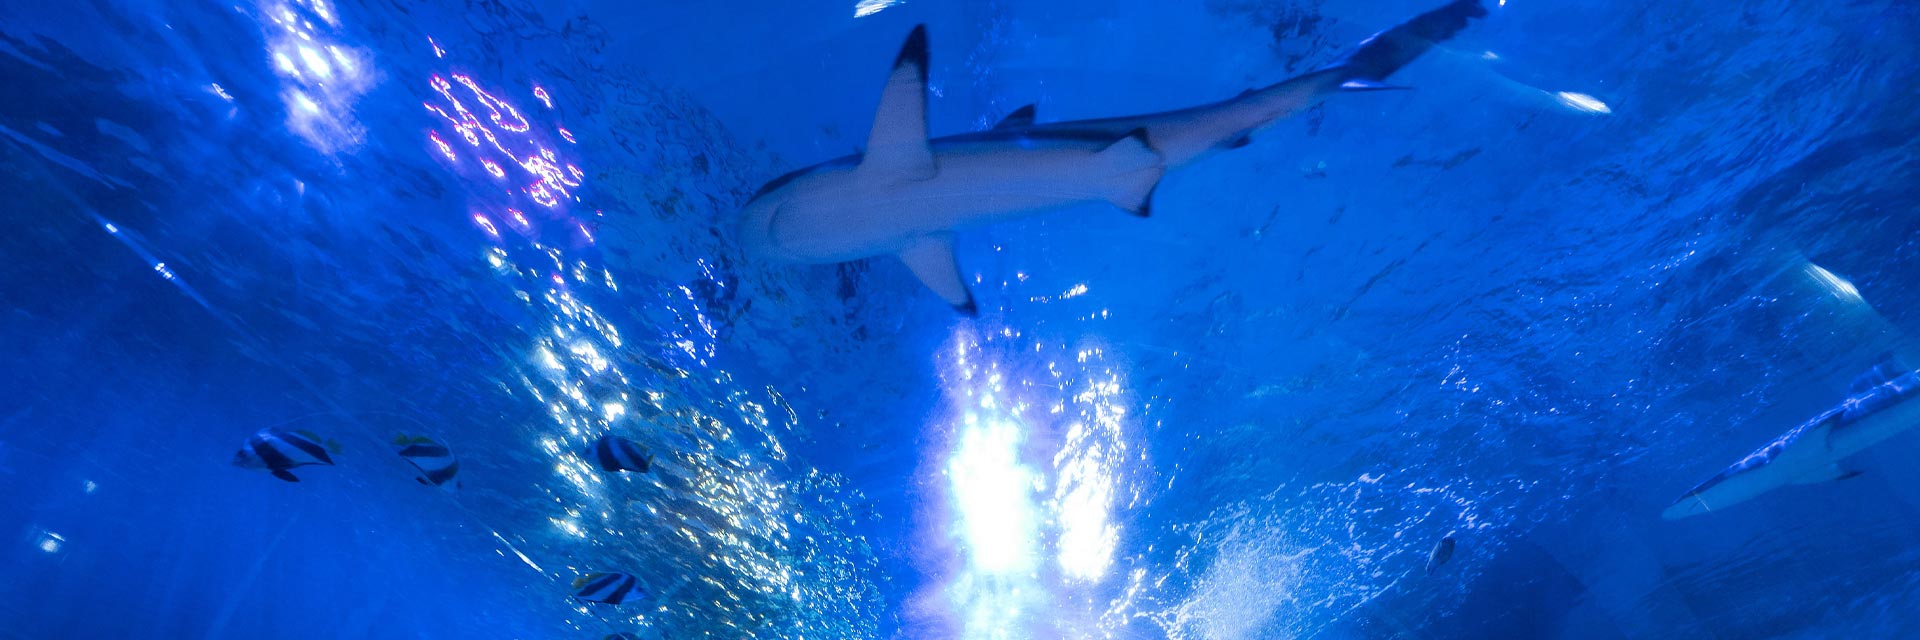 Shark in the ocean tunnel - SEA LIFE Birmingham Aquarium